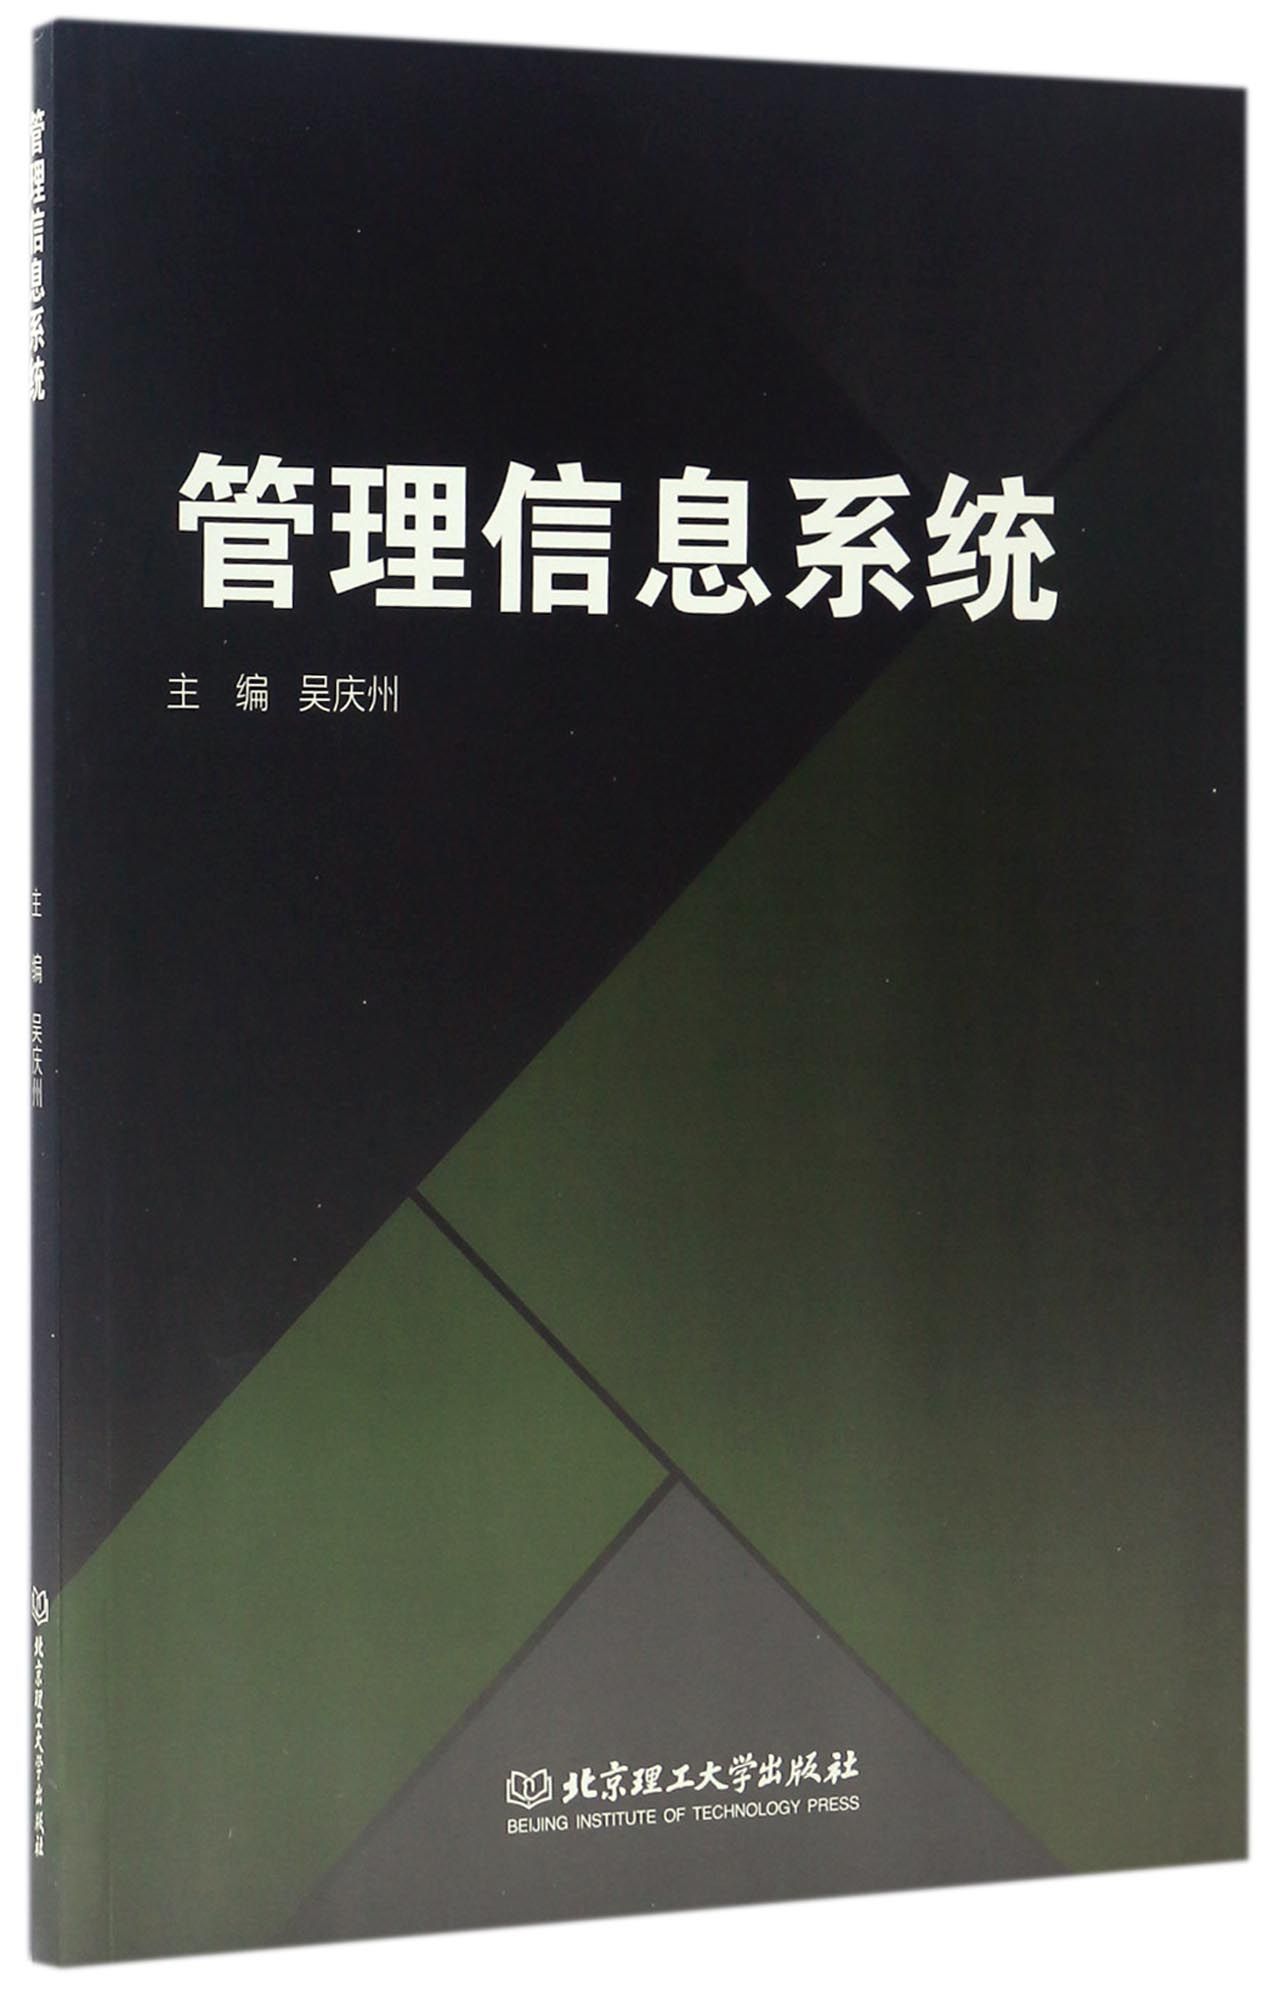 正版图书管理信息系统编者:吴庆州北京理工大学9787568235297